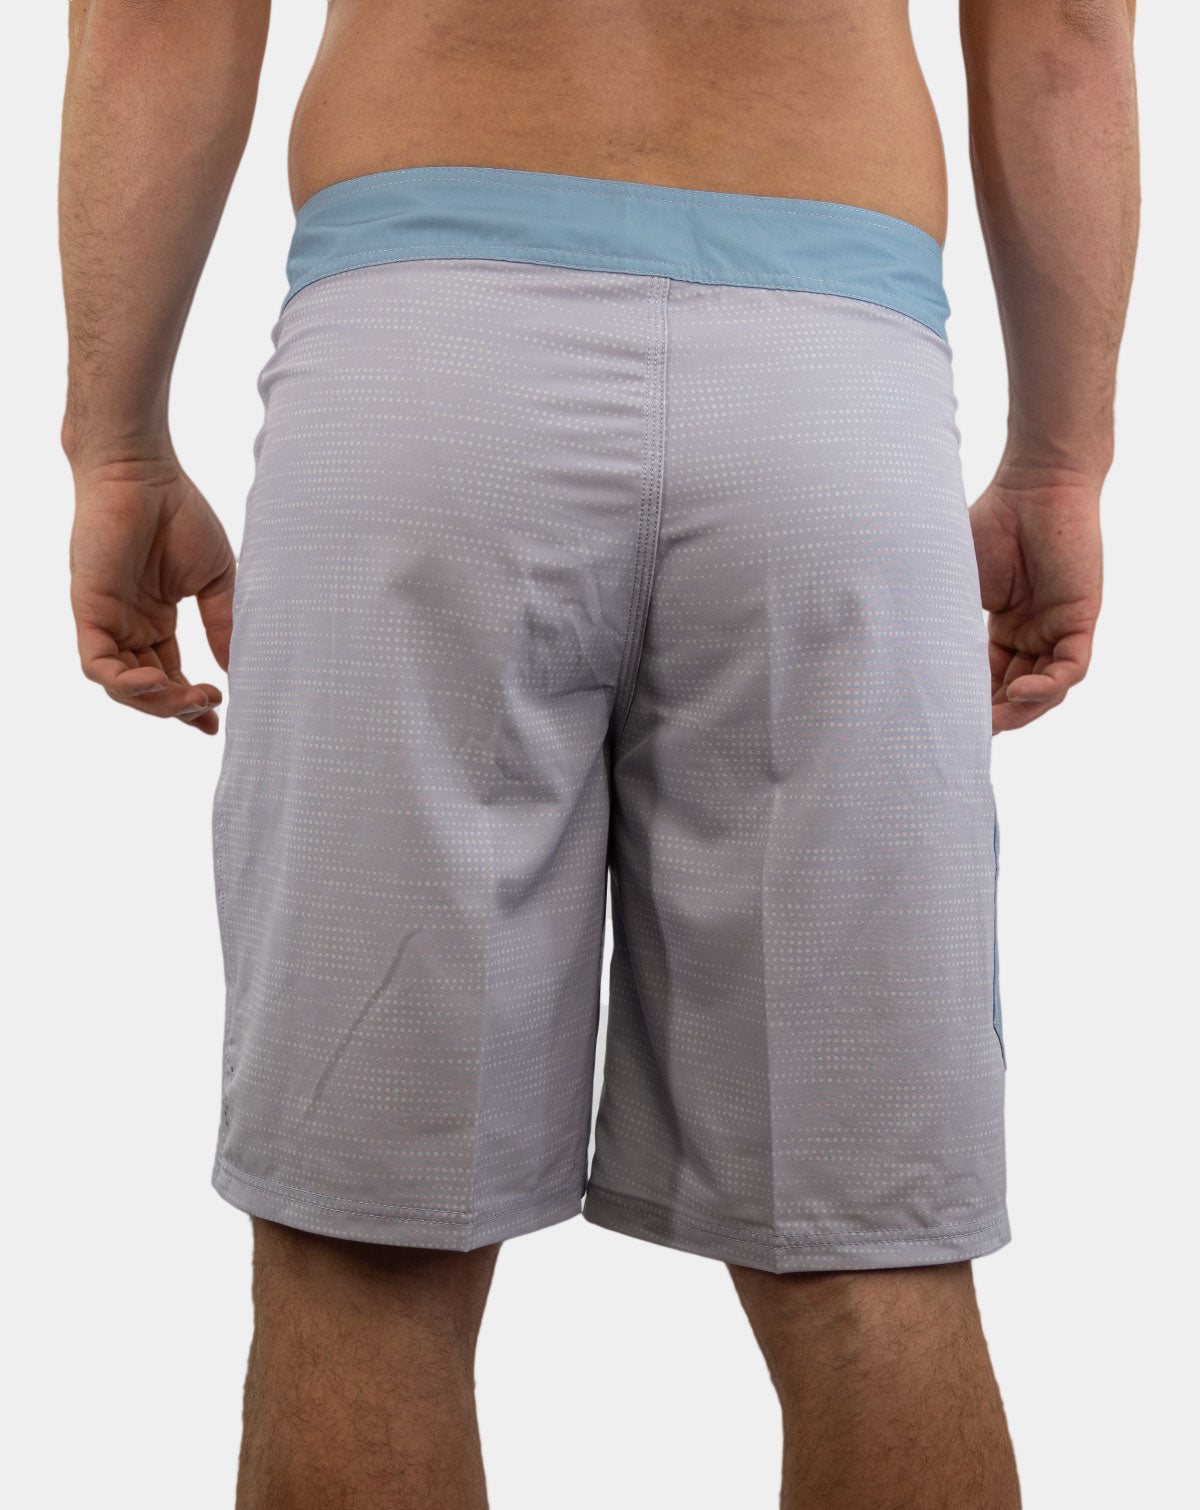 Daily Ritual Board Shorts- Men - Lunker Bunker Boardshorts Reel Sportswear